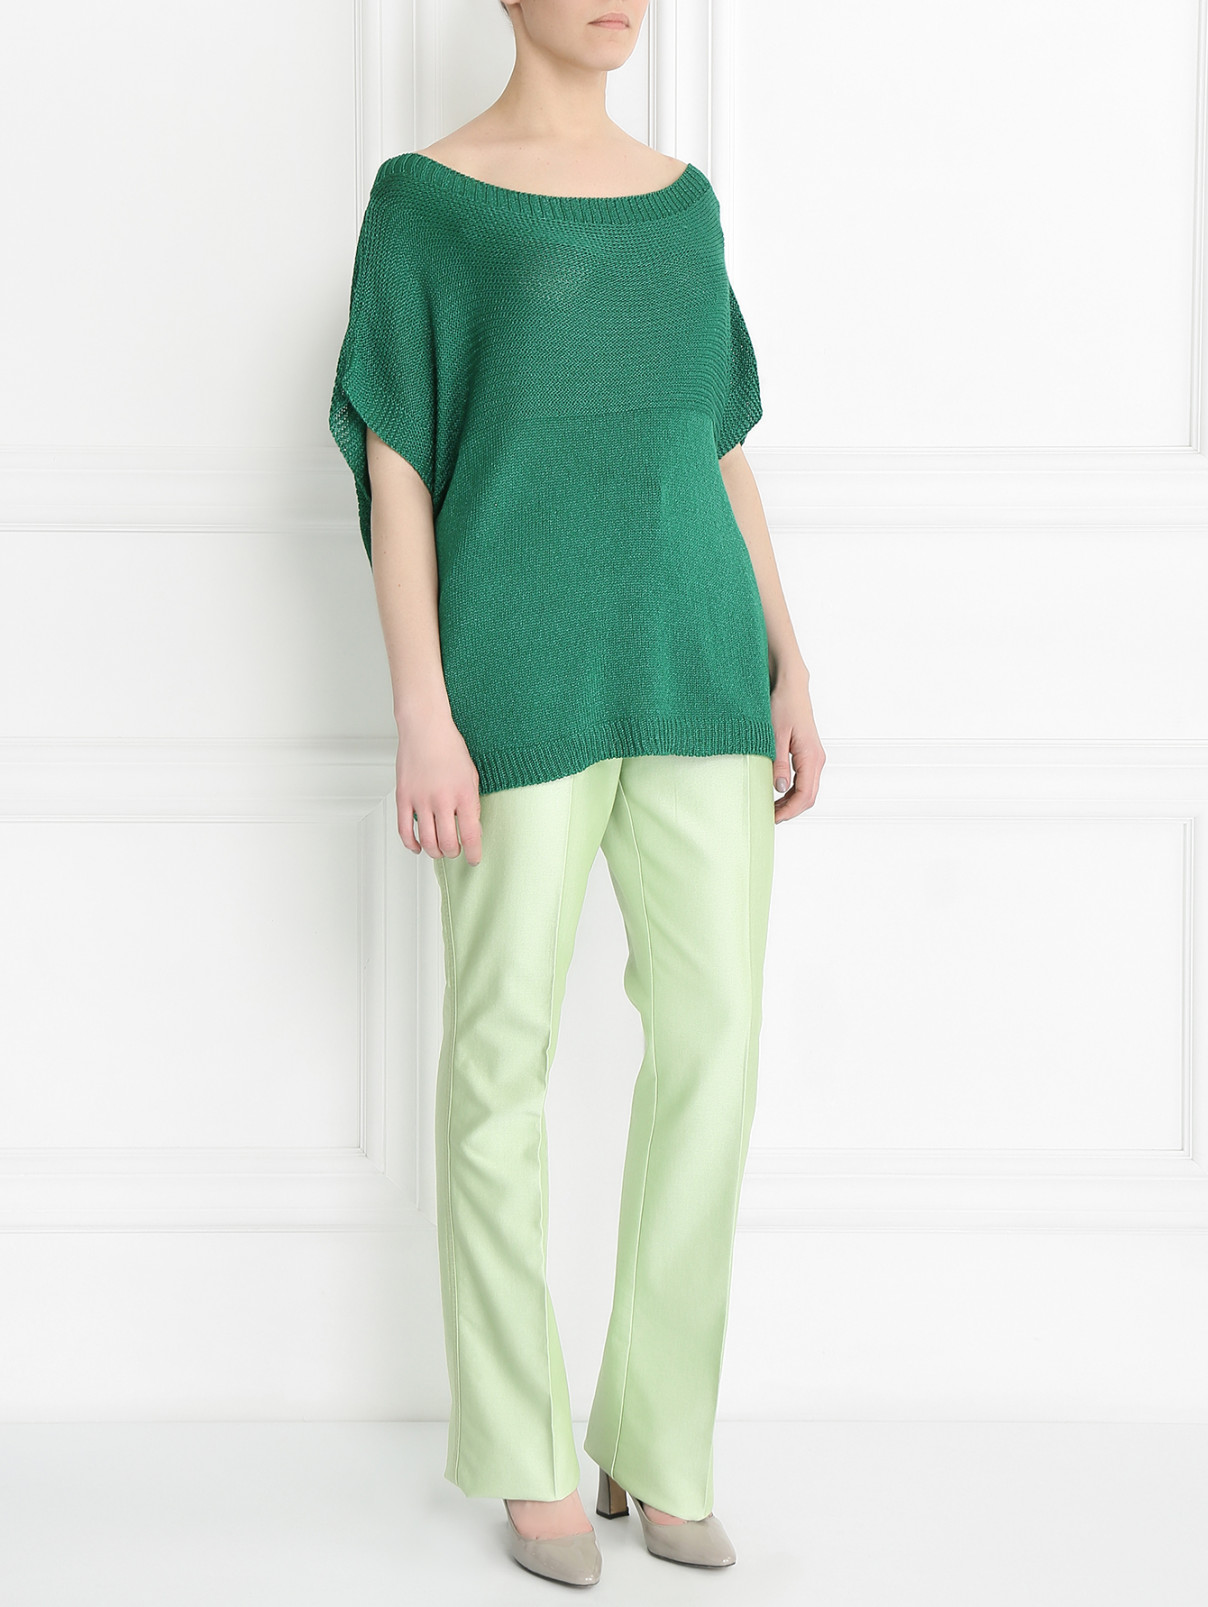 Брюки прямого кроя с боковыми карманами Marina Rinaldi  –  Модель Общий вид  – Цвет:  Зеленый